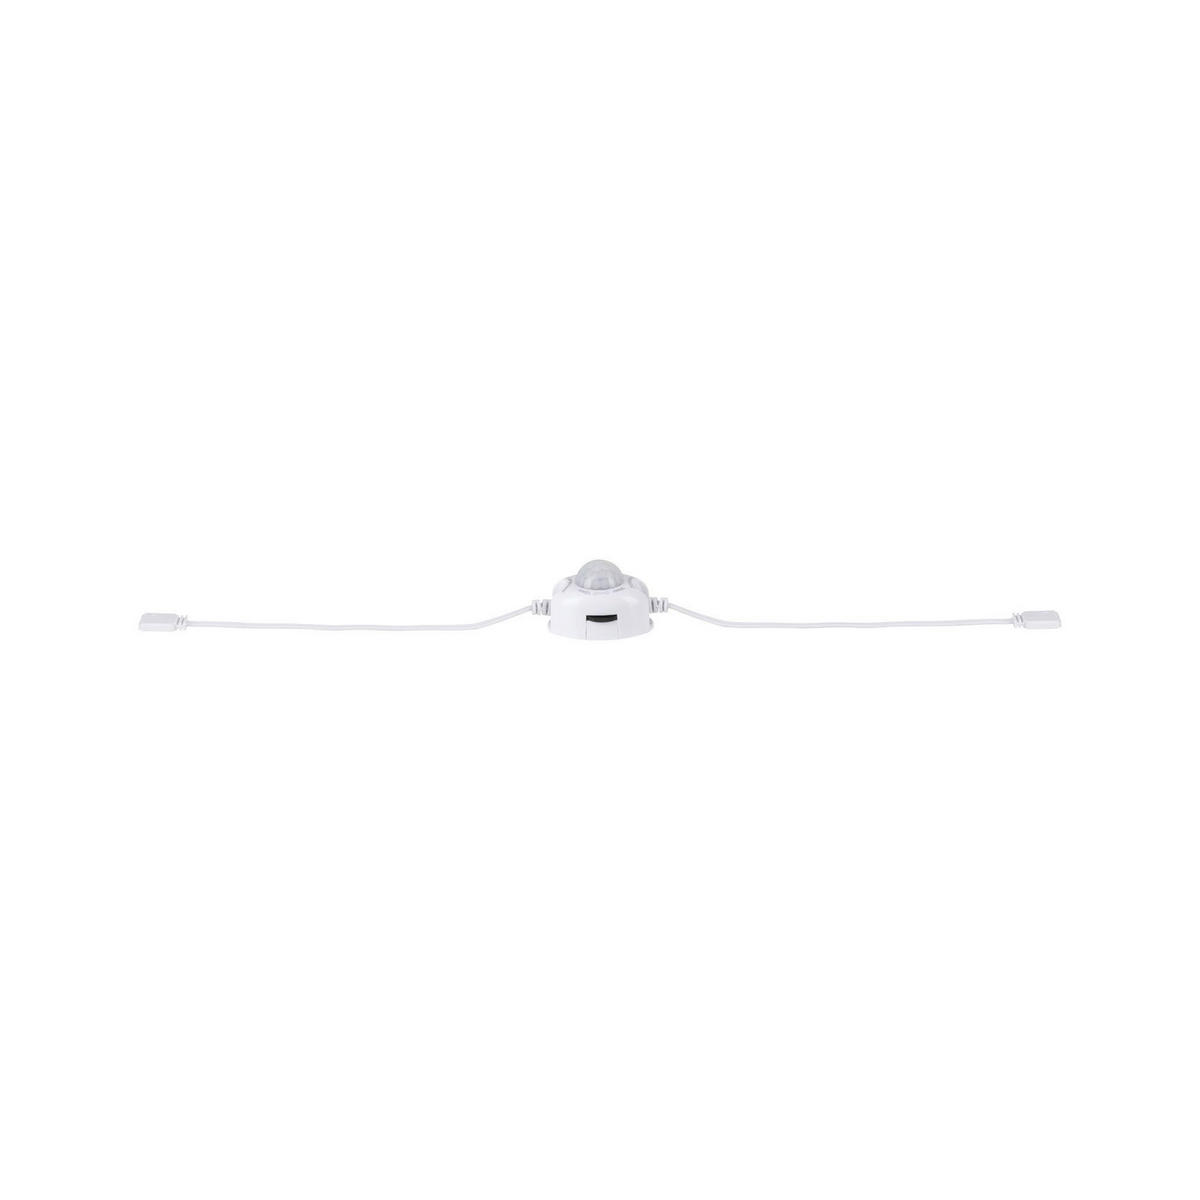 LED-STRIP  - Weiß, Basics, Kunststoff (4,8/3,3cm) - Paulmann